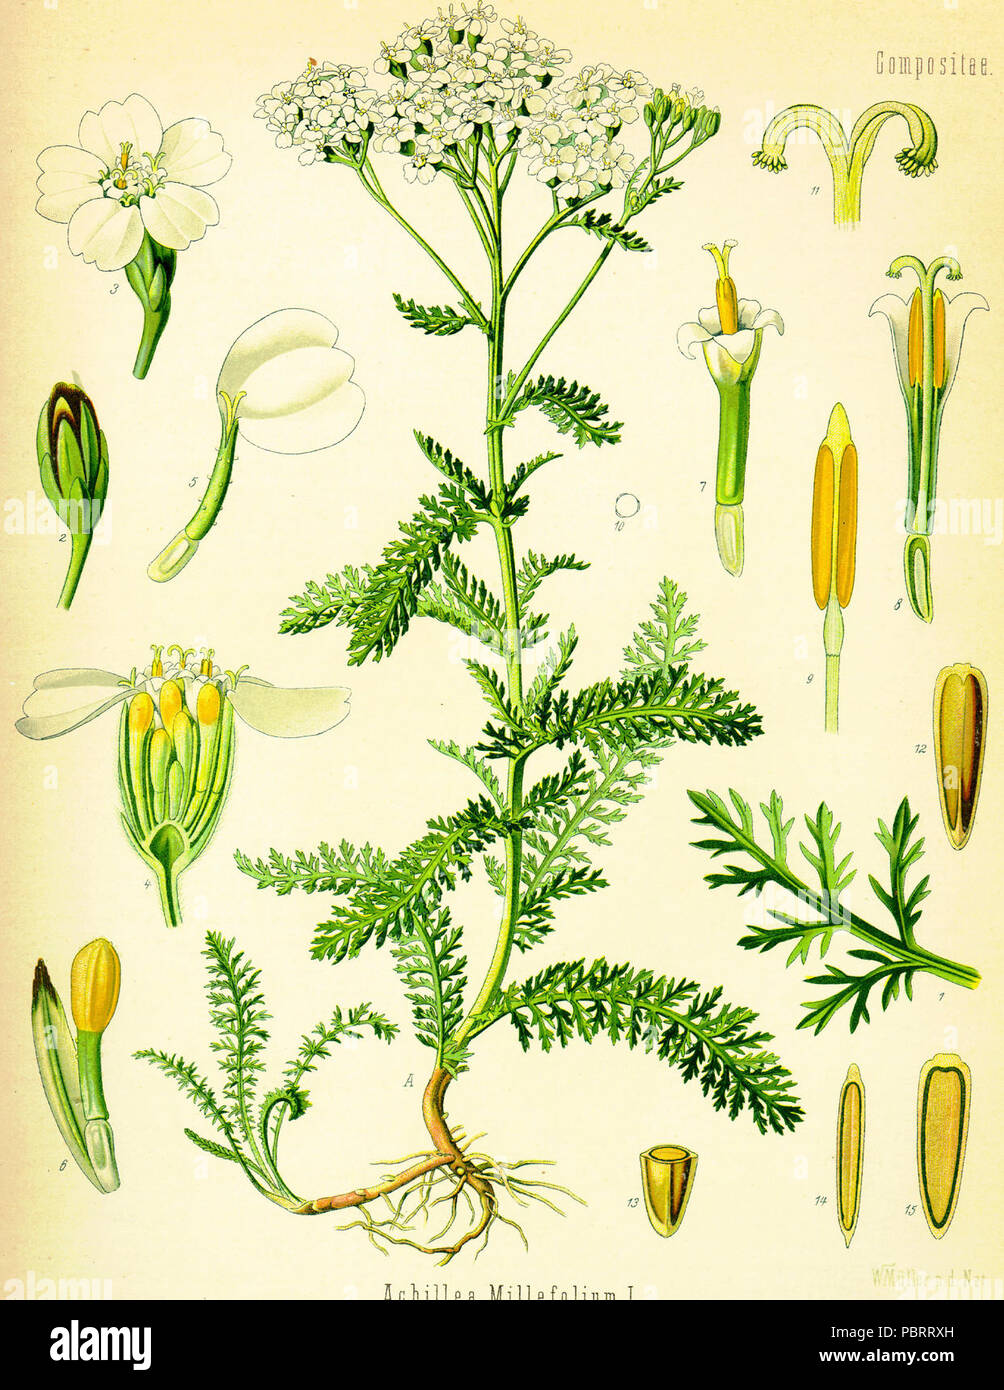 Achillea millefolium (Köhler). Stock Photo